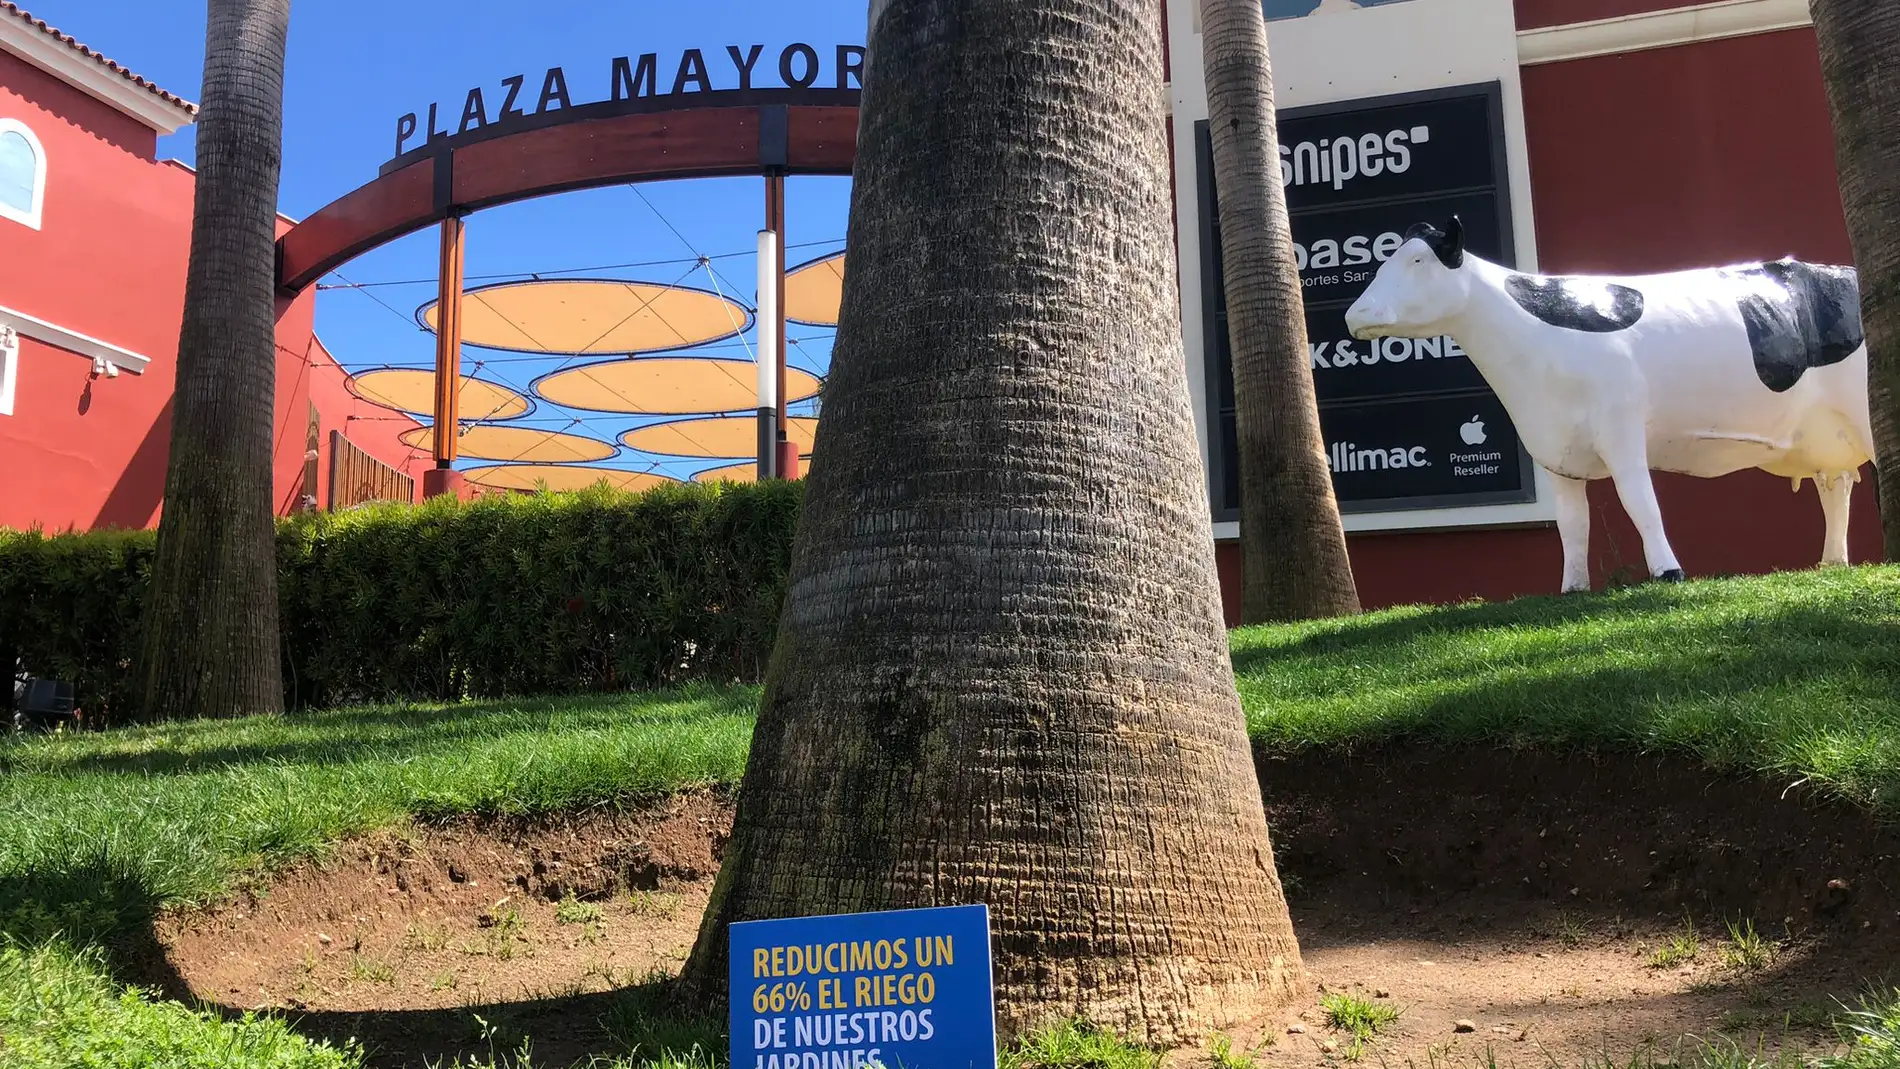 Plaza Mayor pone en marcha su nuevo plan anti-sequía para controlar el consumo de agua 